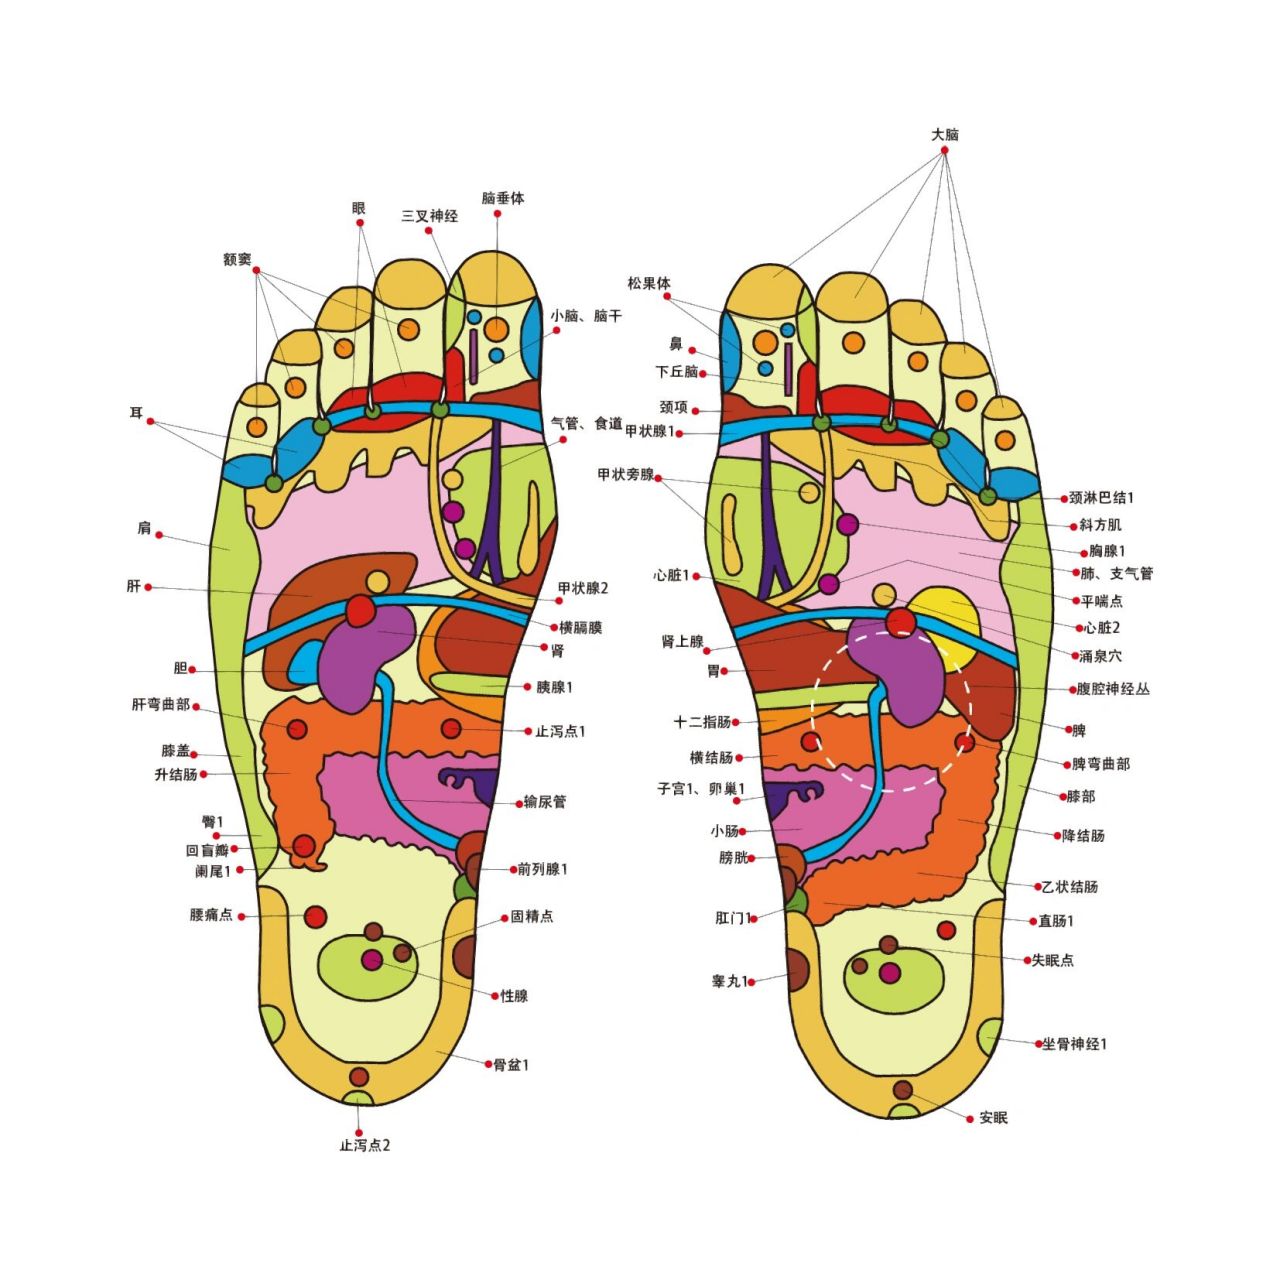 中医经络穴位:《脚底穴位图片大全》 在临床医学上,通常所说的脚底